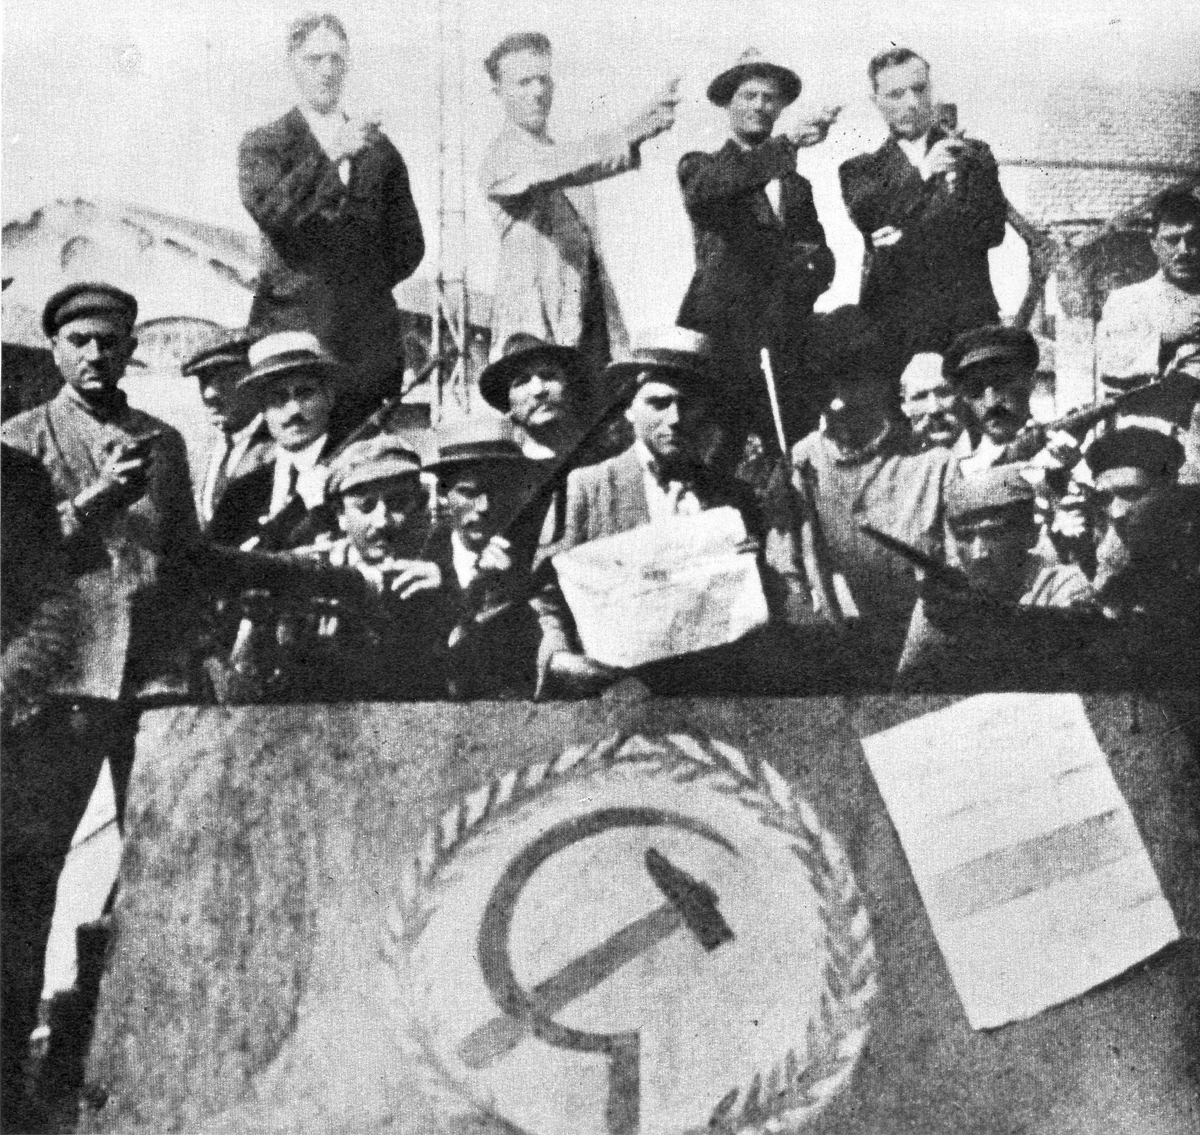 Storia dello sciopero. 1920: lavoratori in sciopero occupano una fabbrica. Foto via Wikimedia Commons